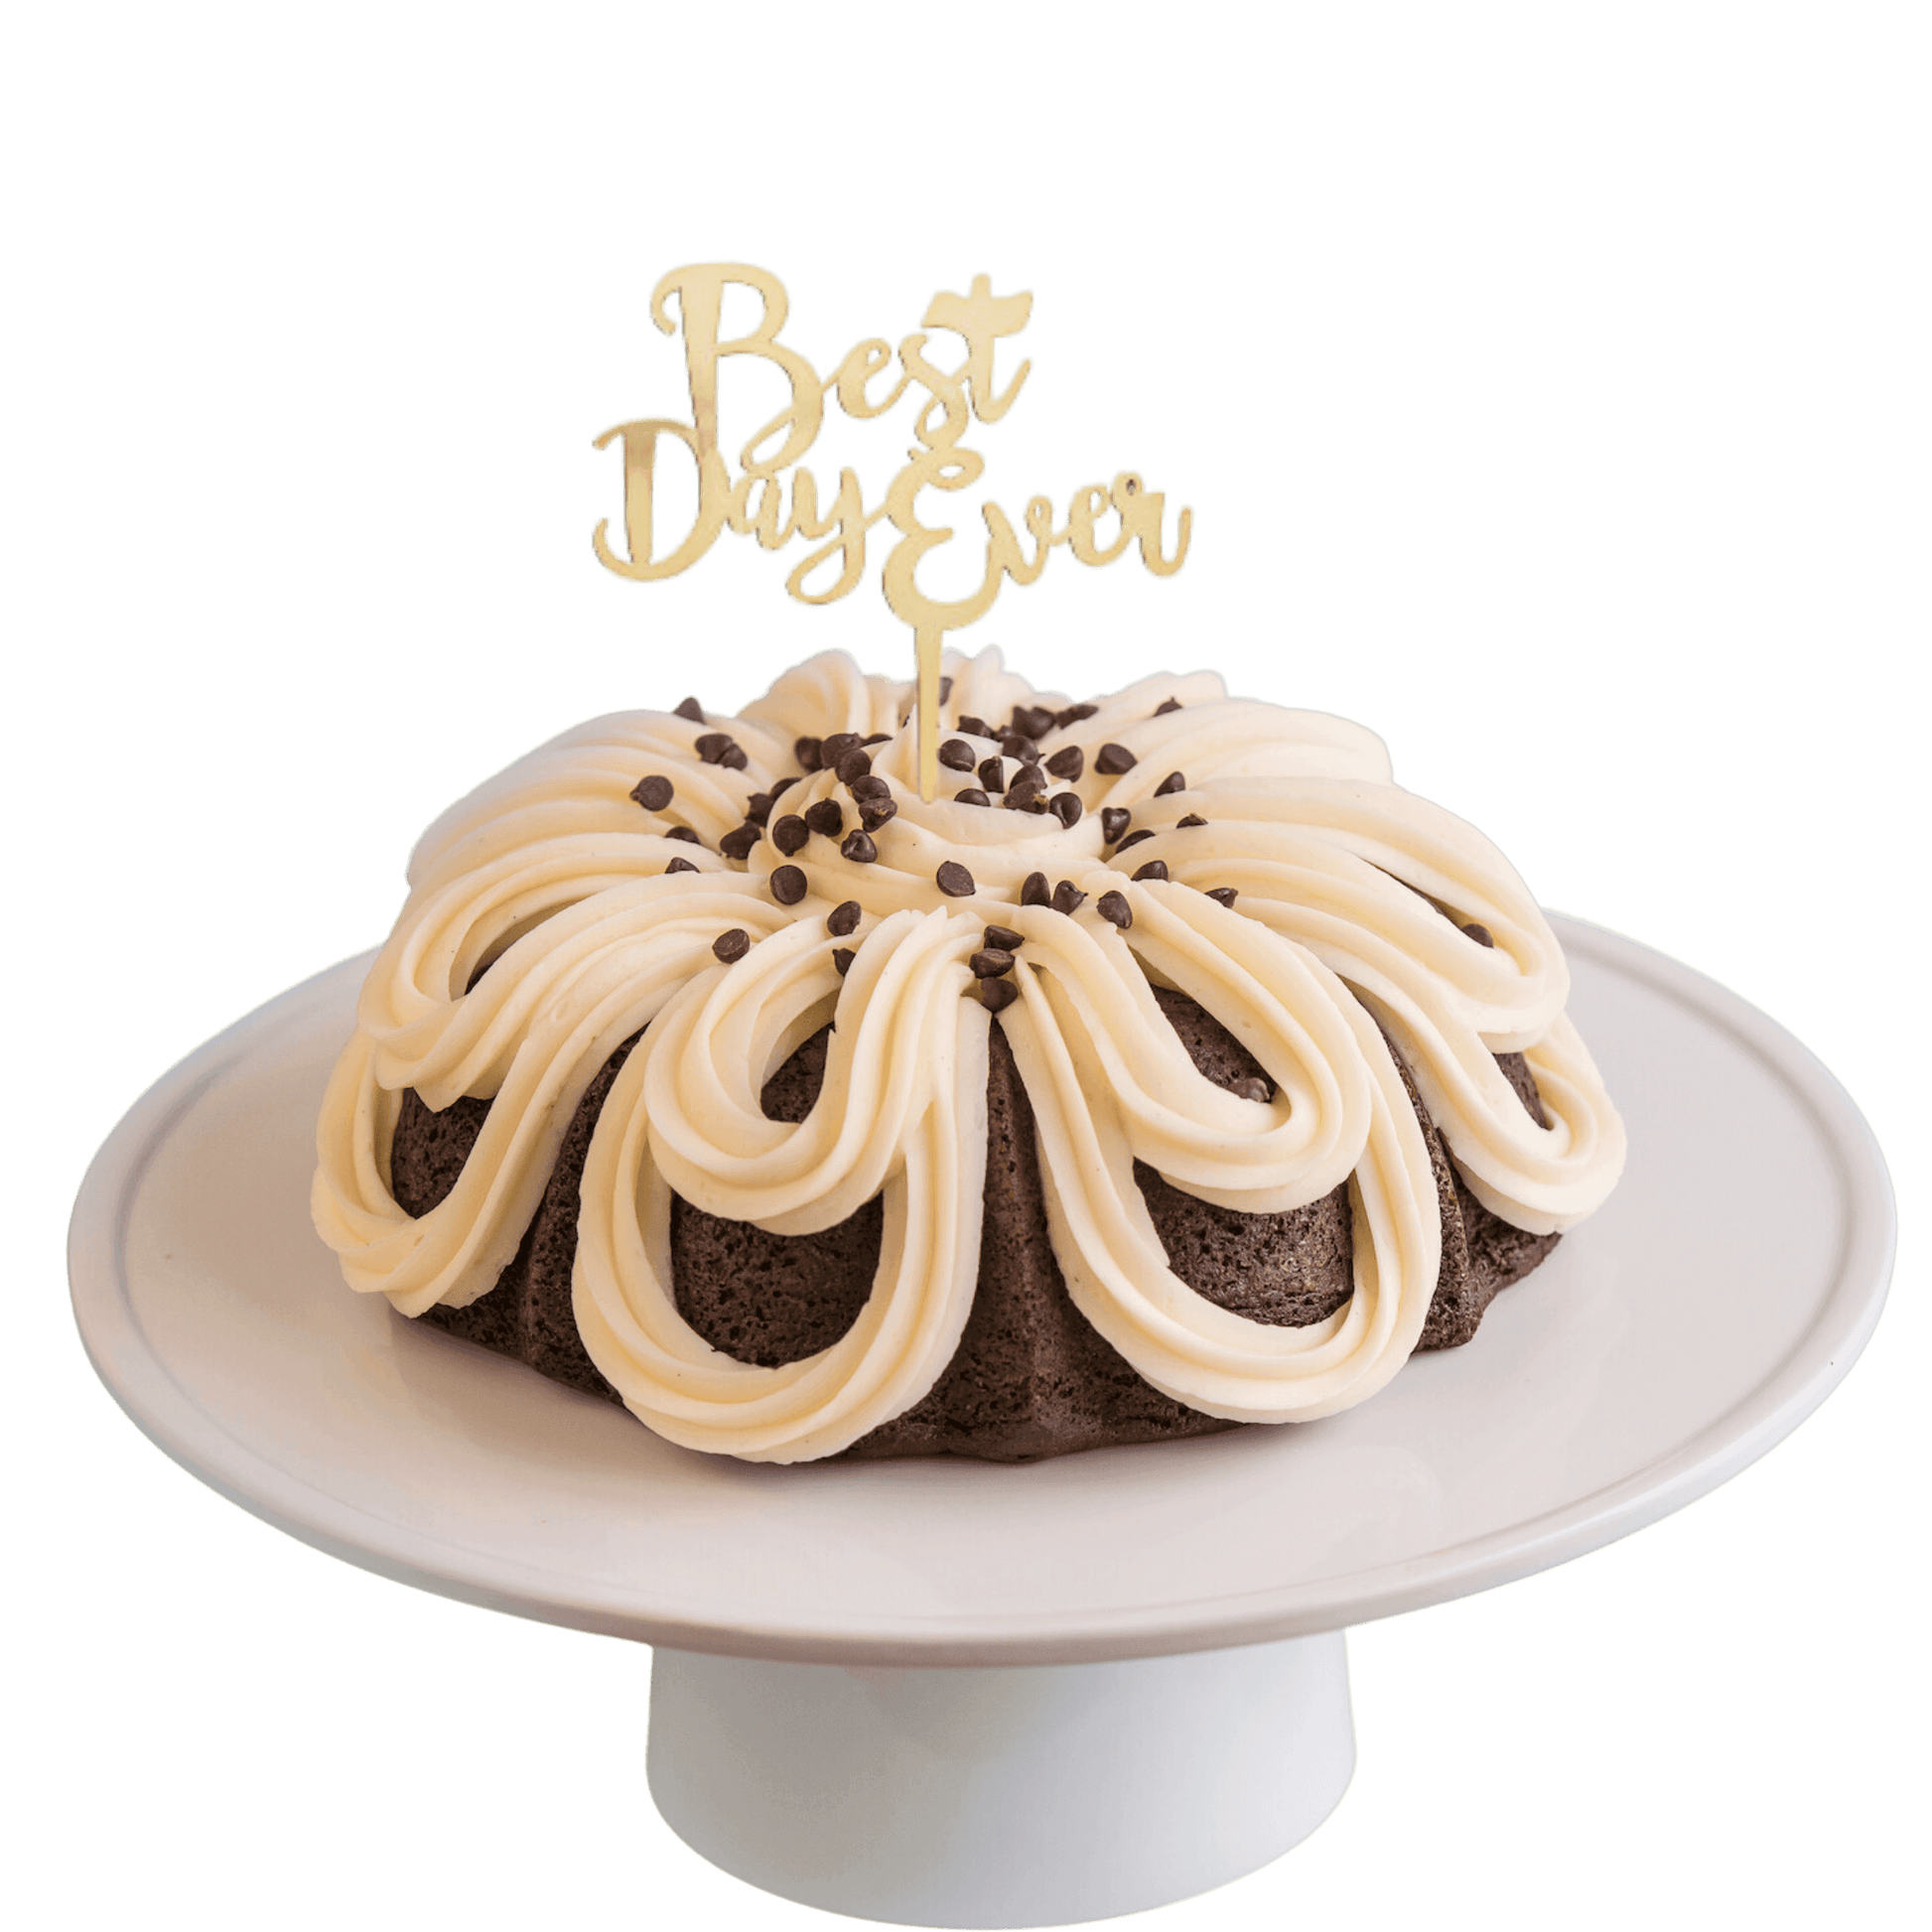 Big Bundt Cakes | "BEST DAY EVER" Candle Holder Bundt Cake - Bundt Cakes